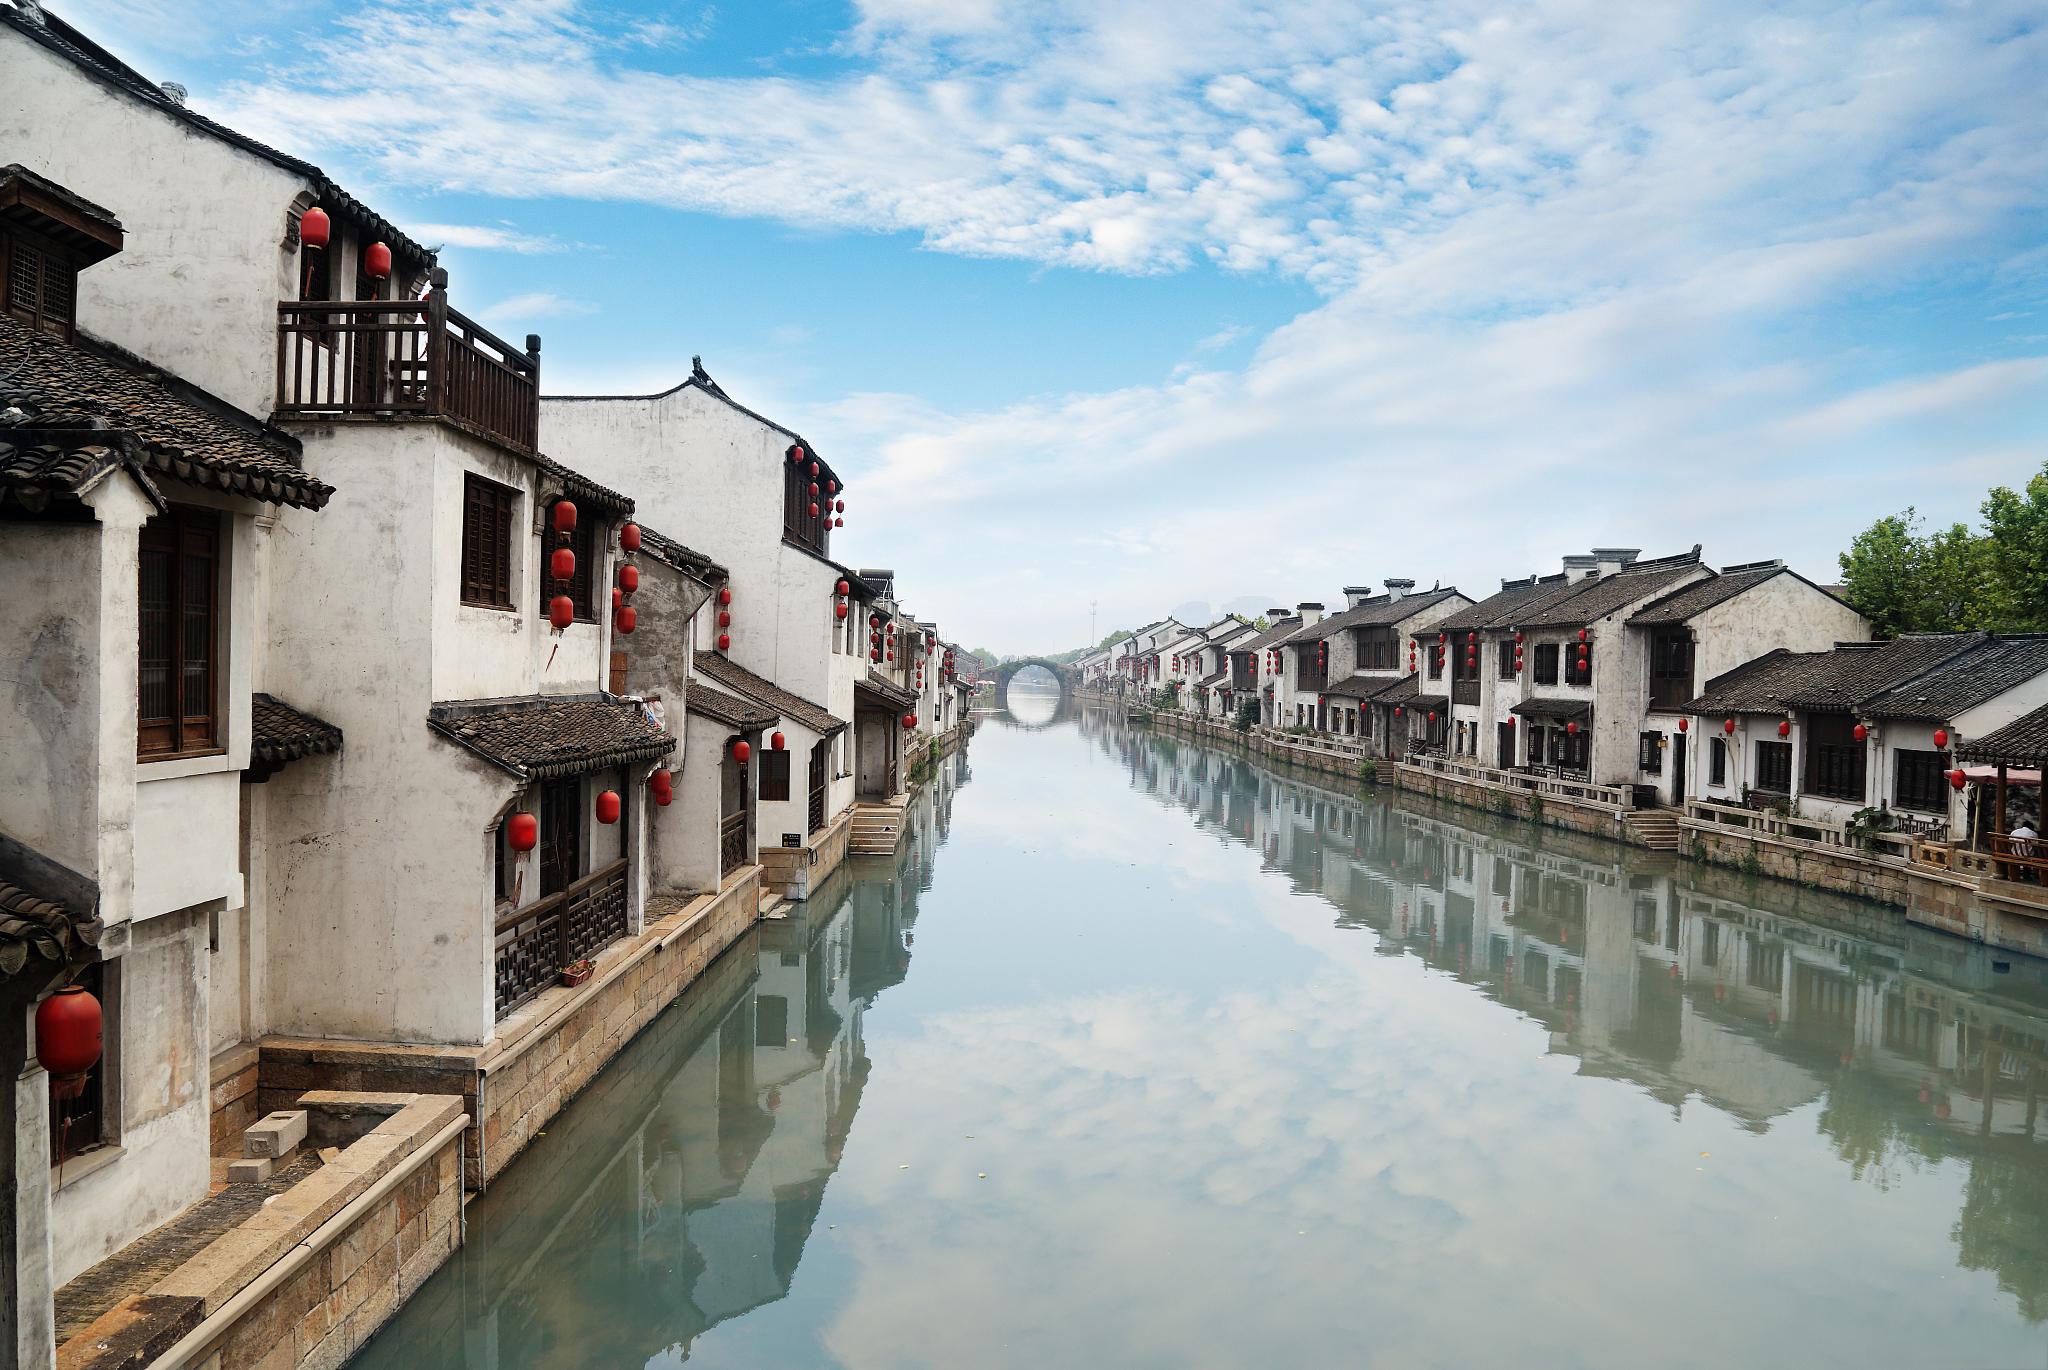 如果你想感受京津冀地区的旅游发展情况或者寻找一个周末好去处,可以